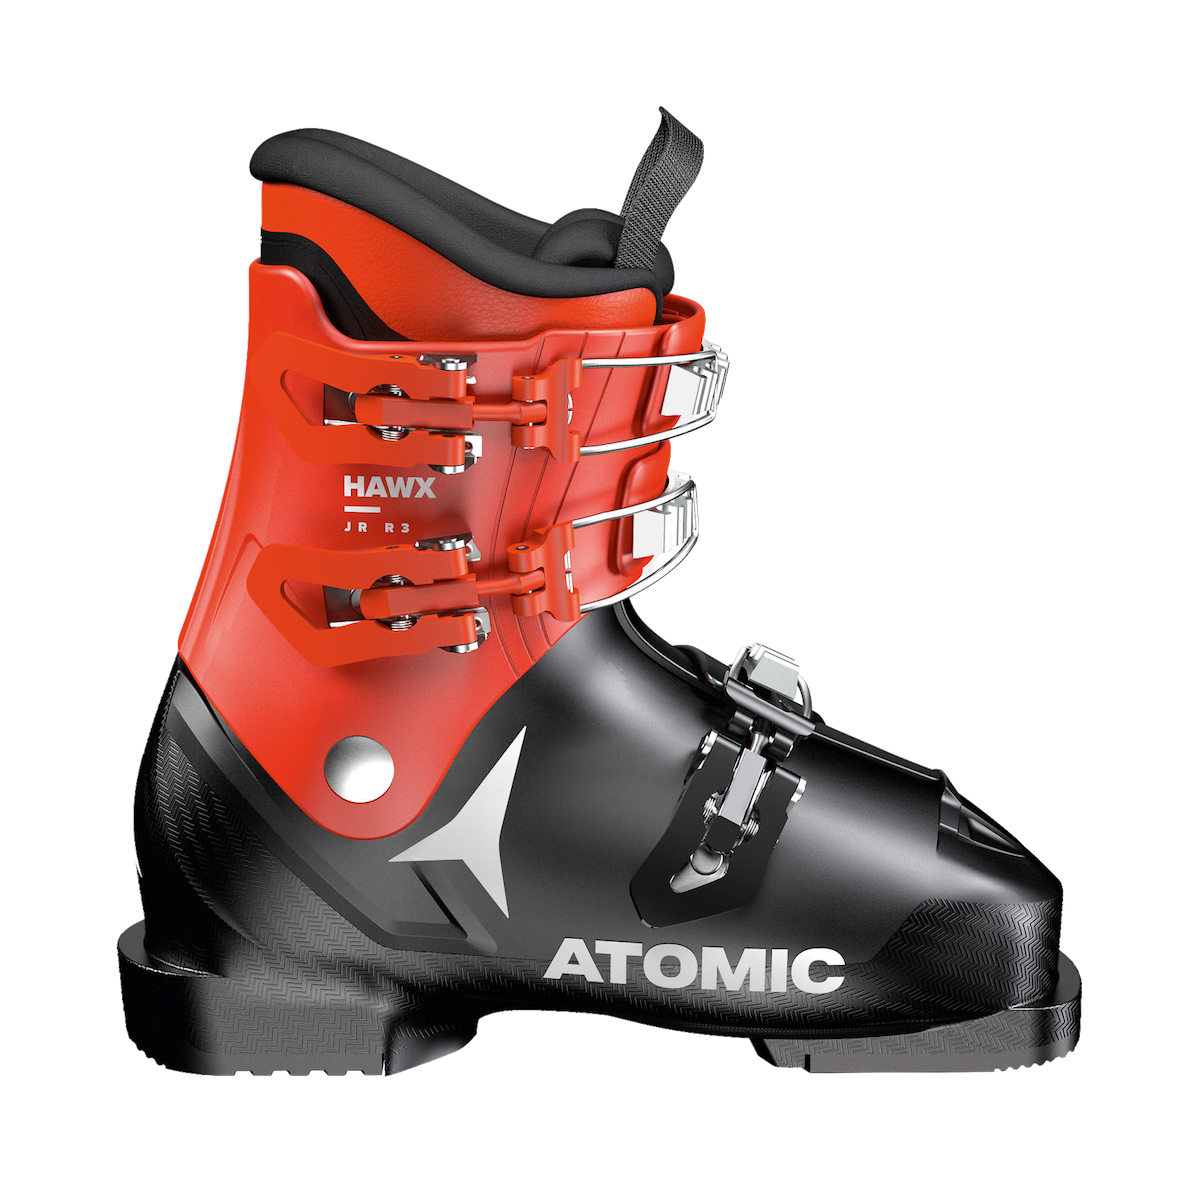 ATOMIC HAWX JR R3 alpine ski boots - black/red